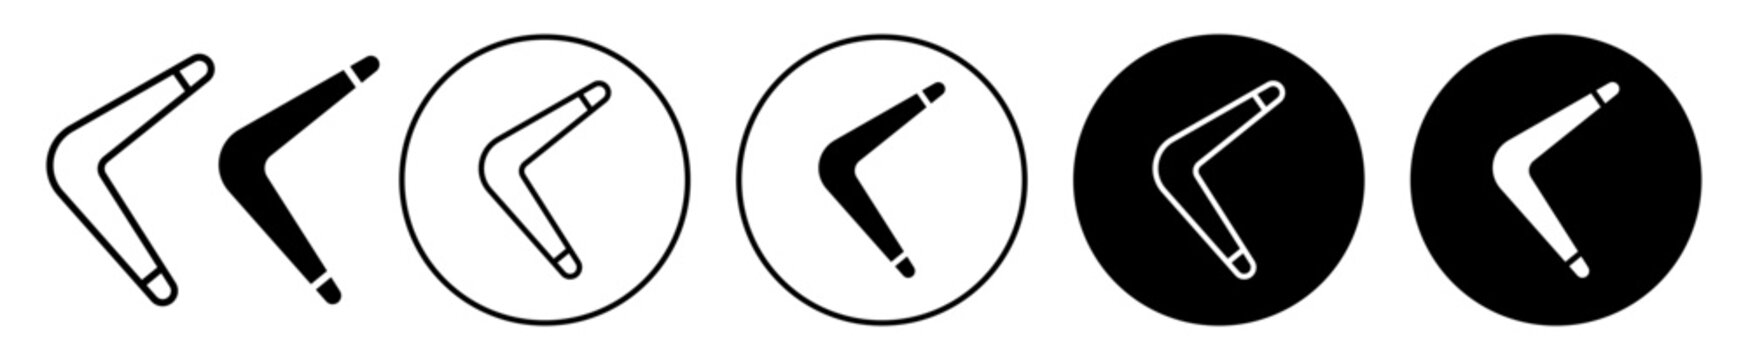 boomerang vector icon set. bumerang symbol in black color.